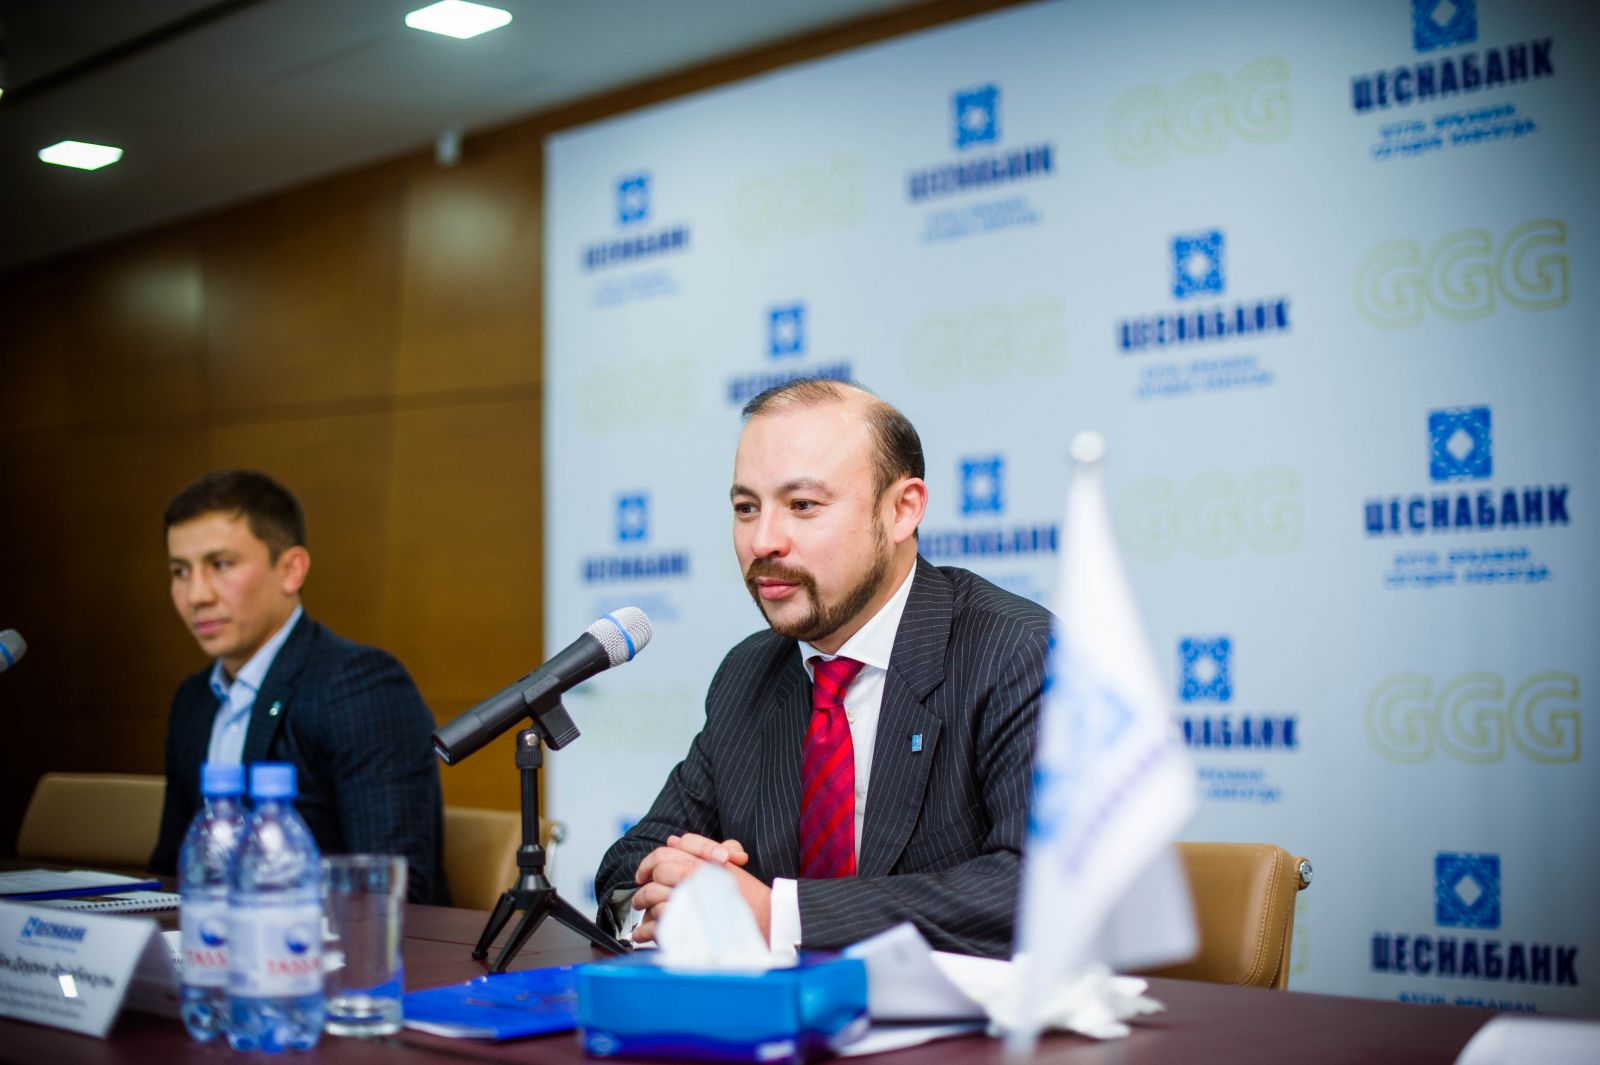 Геннадий Головкин — посол АО «Цеснабанк»